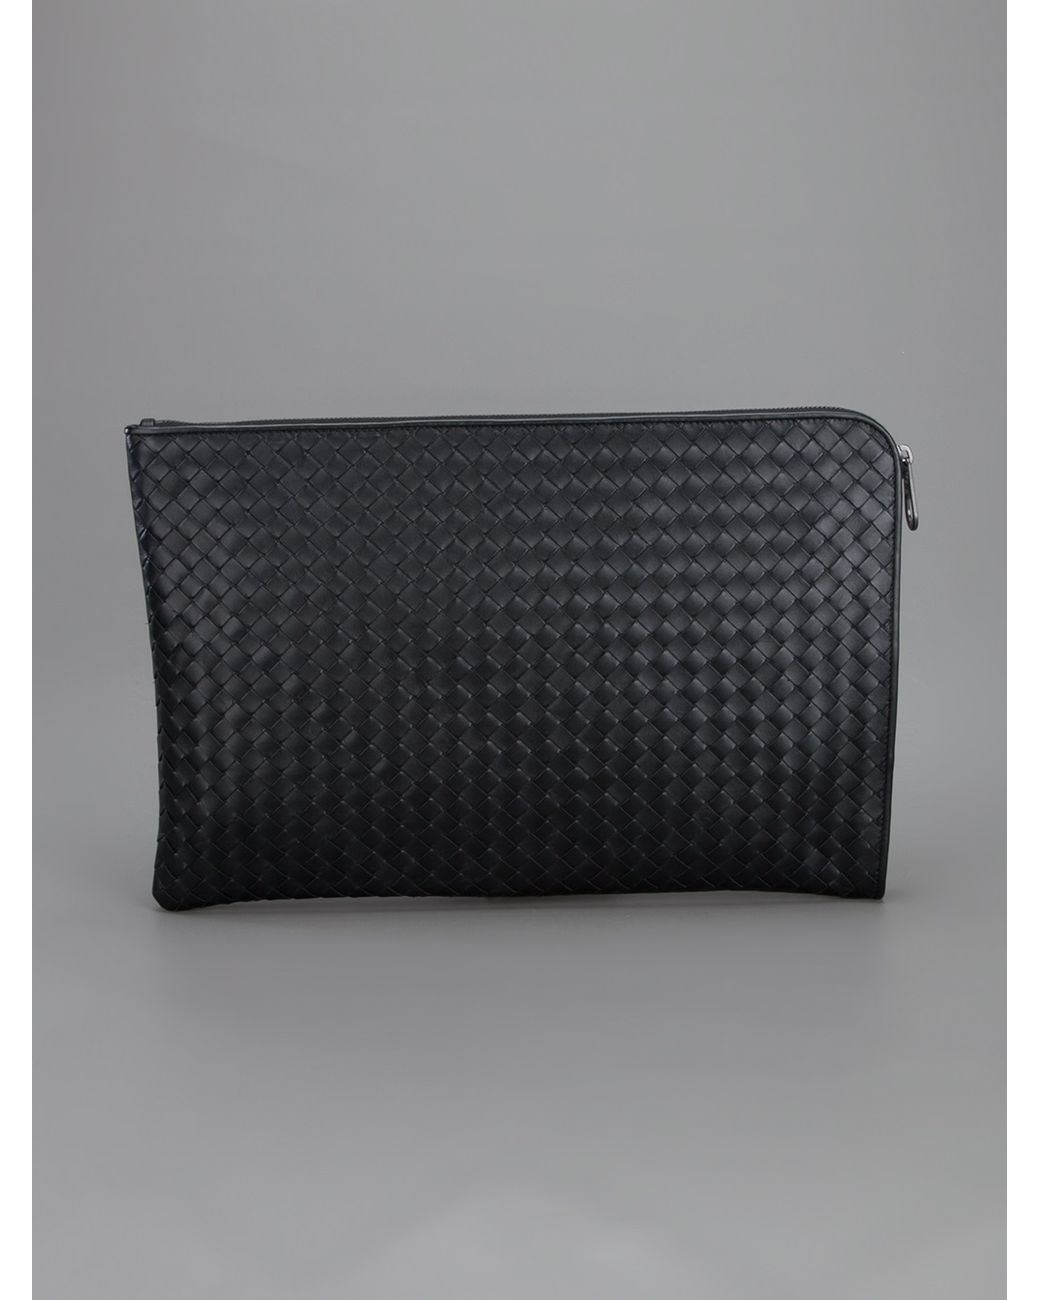 Bottega Veneta Intrecciato Laptop Sleeve in Black for Men | Lyst